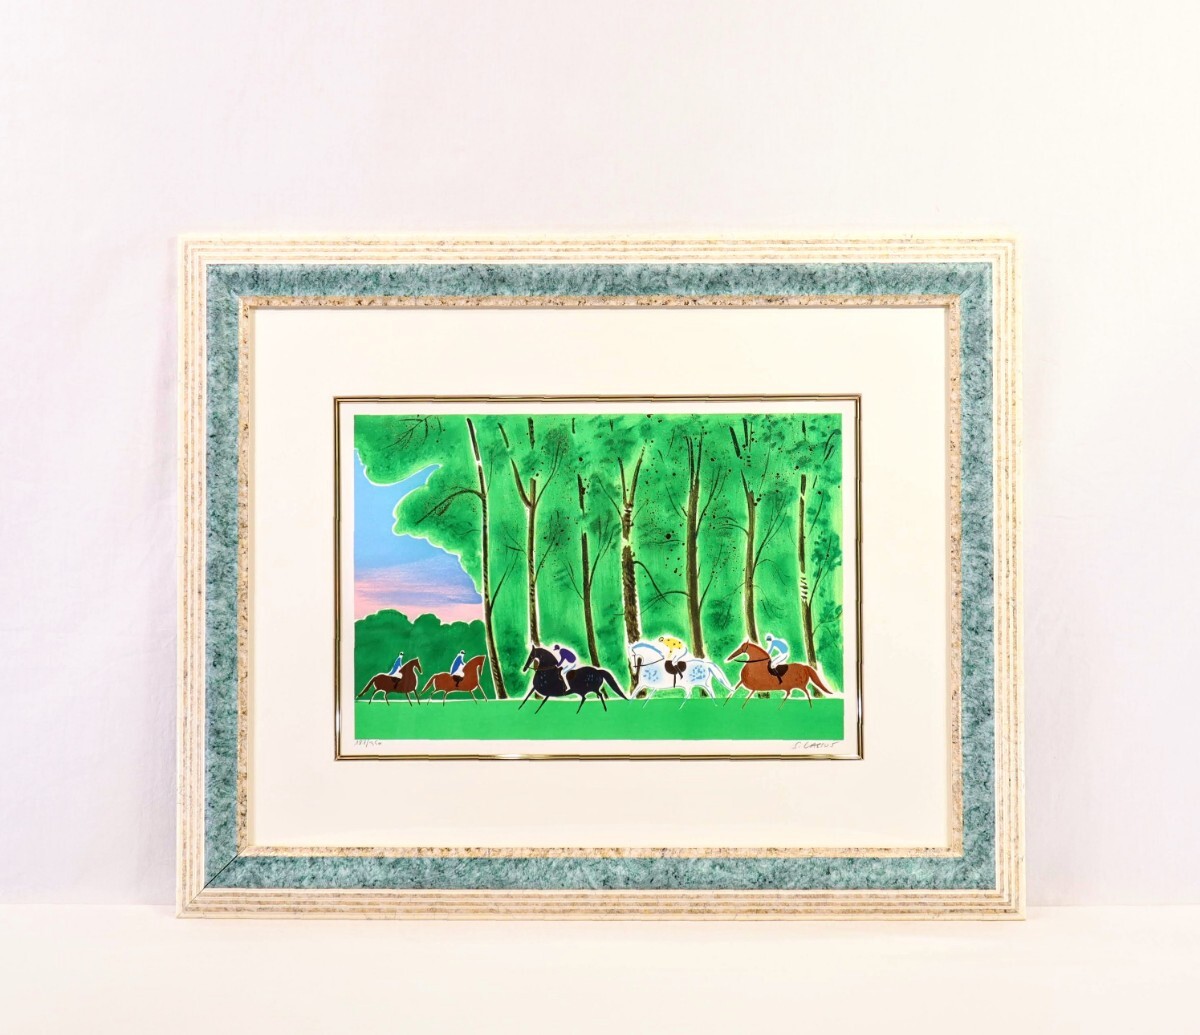 真作 セルジュ・ラシス リトグラフ「夏の乗馬」画寸 40.5cm×27cm 仏人作家 デュフィに影響 形や色を単純化し耽美主義を追求 8871_画像1